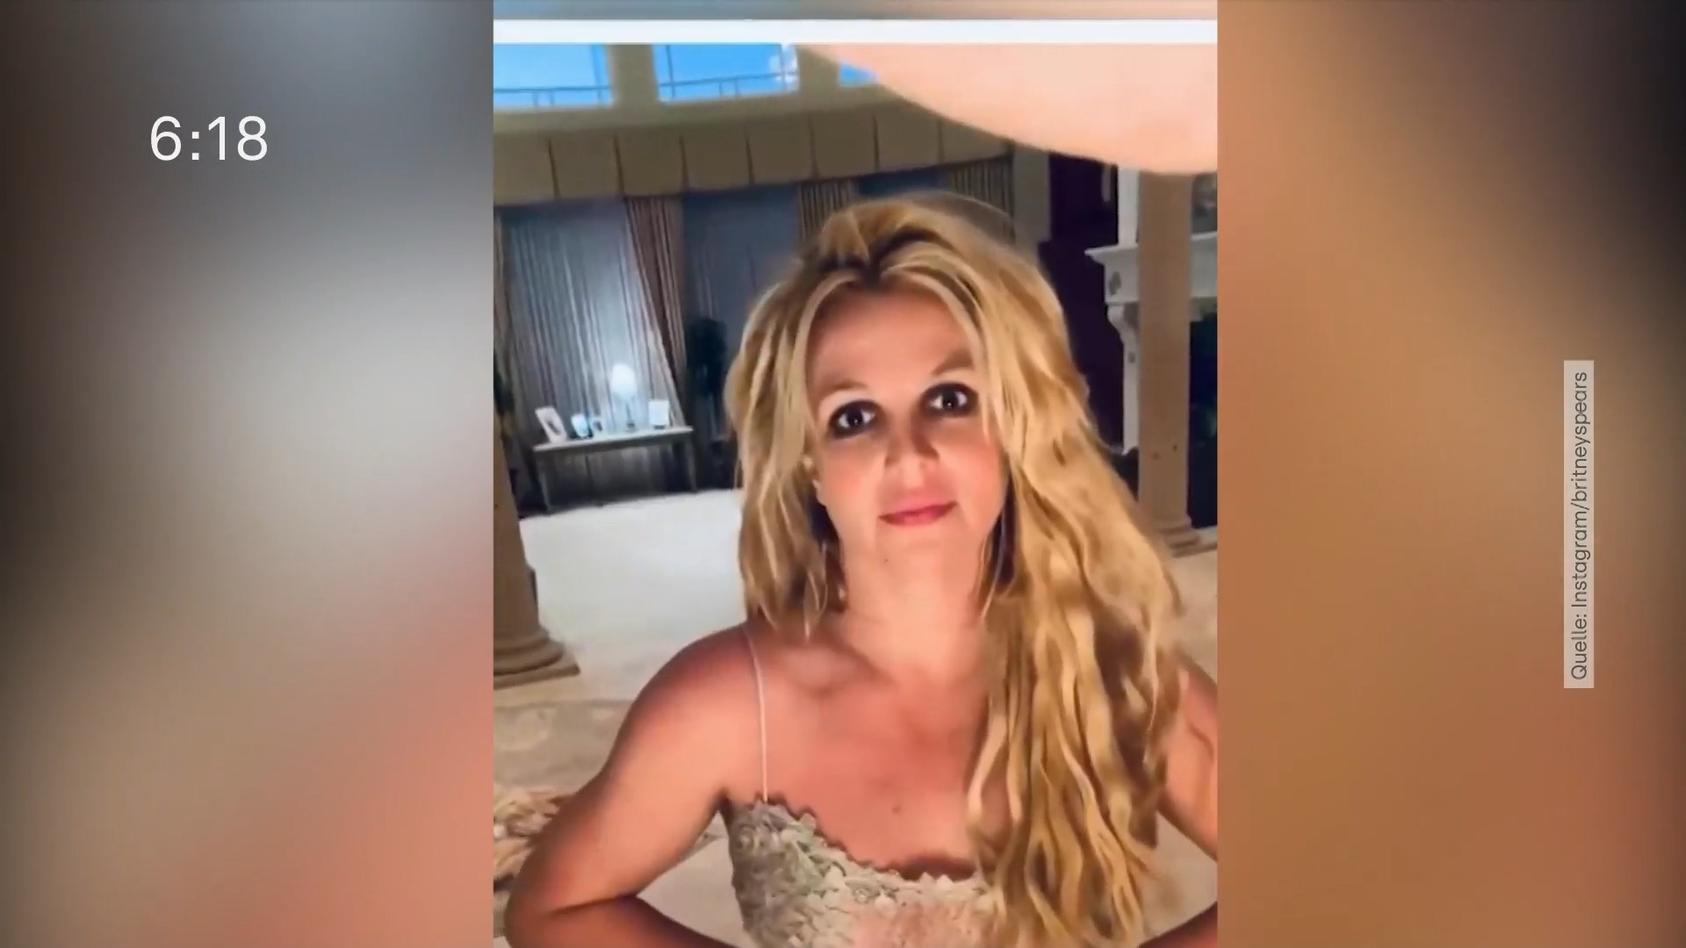 Steckt Britney Spears in Schwierigkeiten? Besorgte Fans verständigen die Polizei